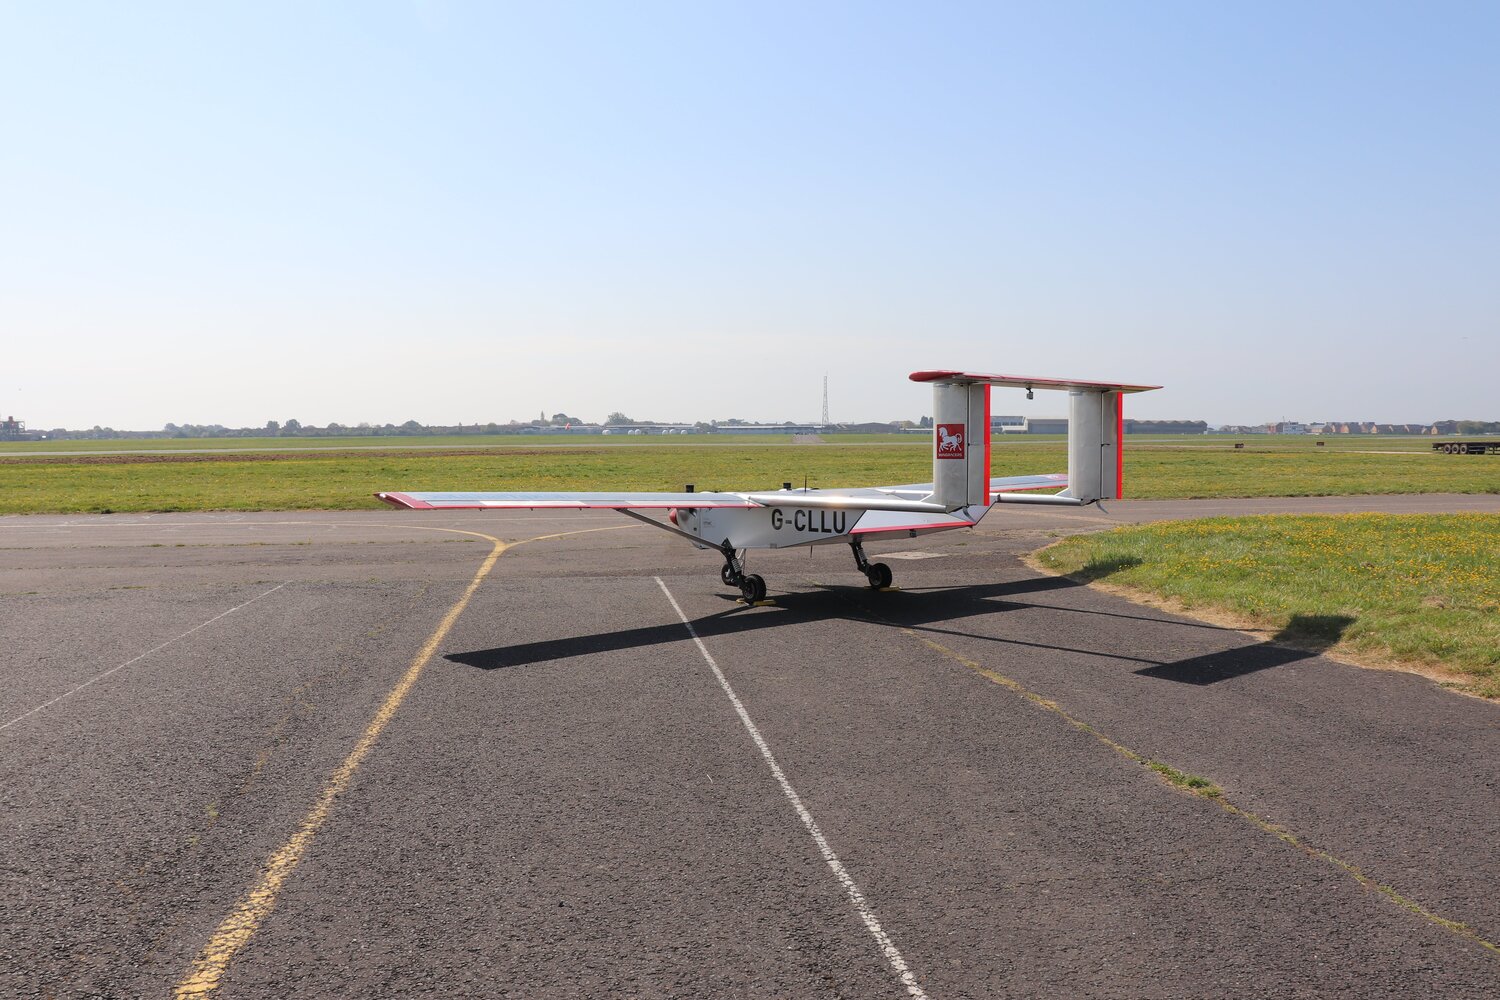 UAV on runway